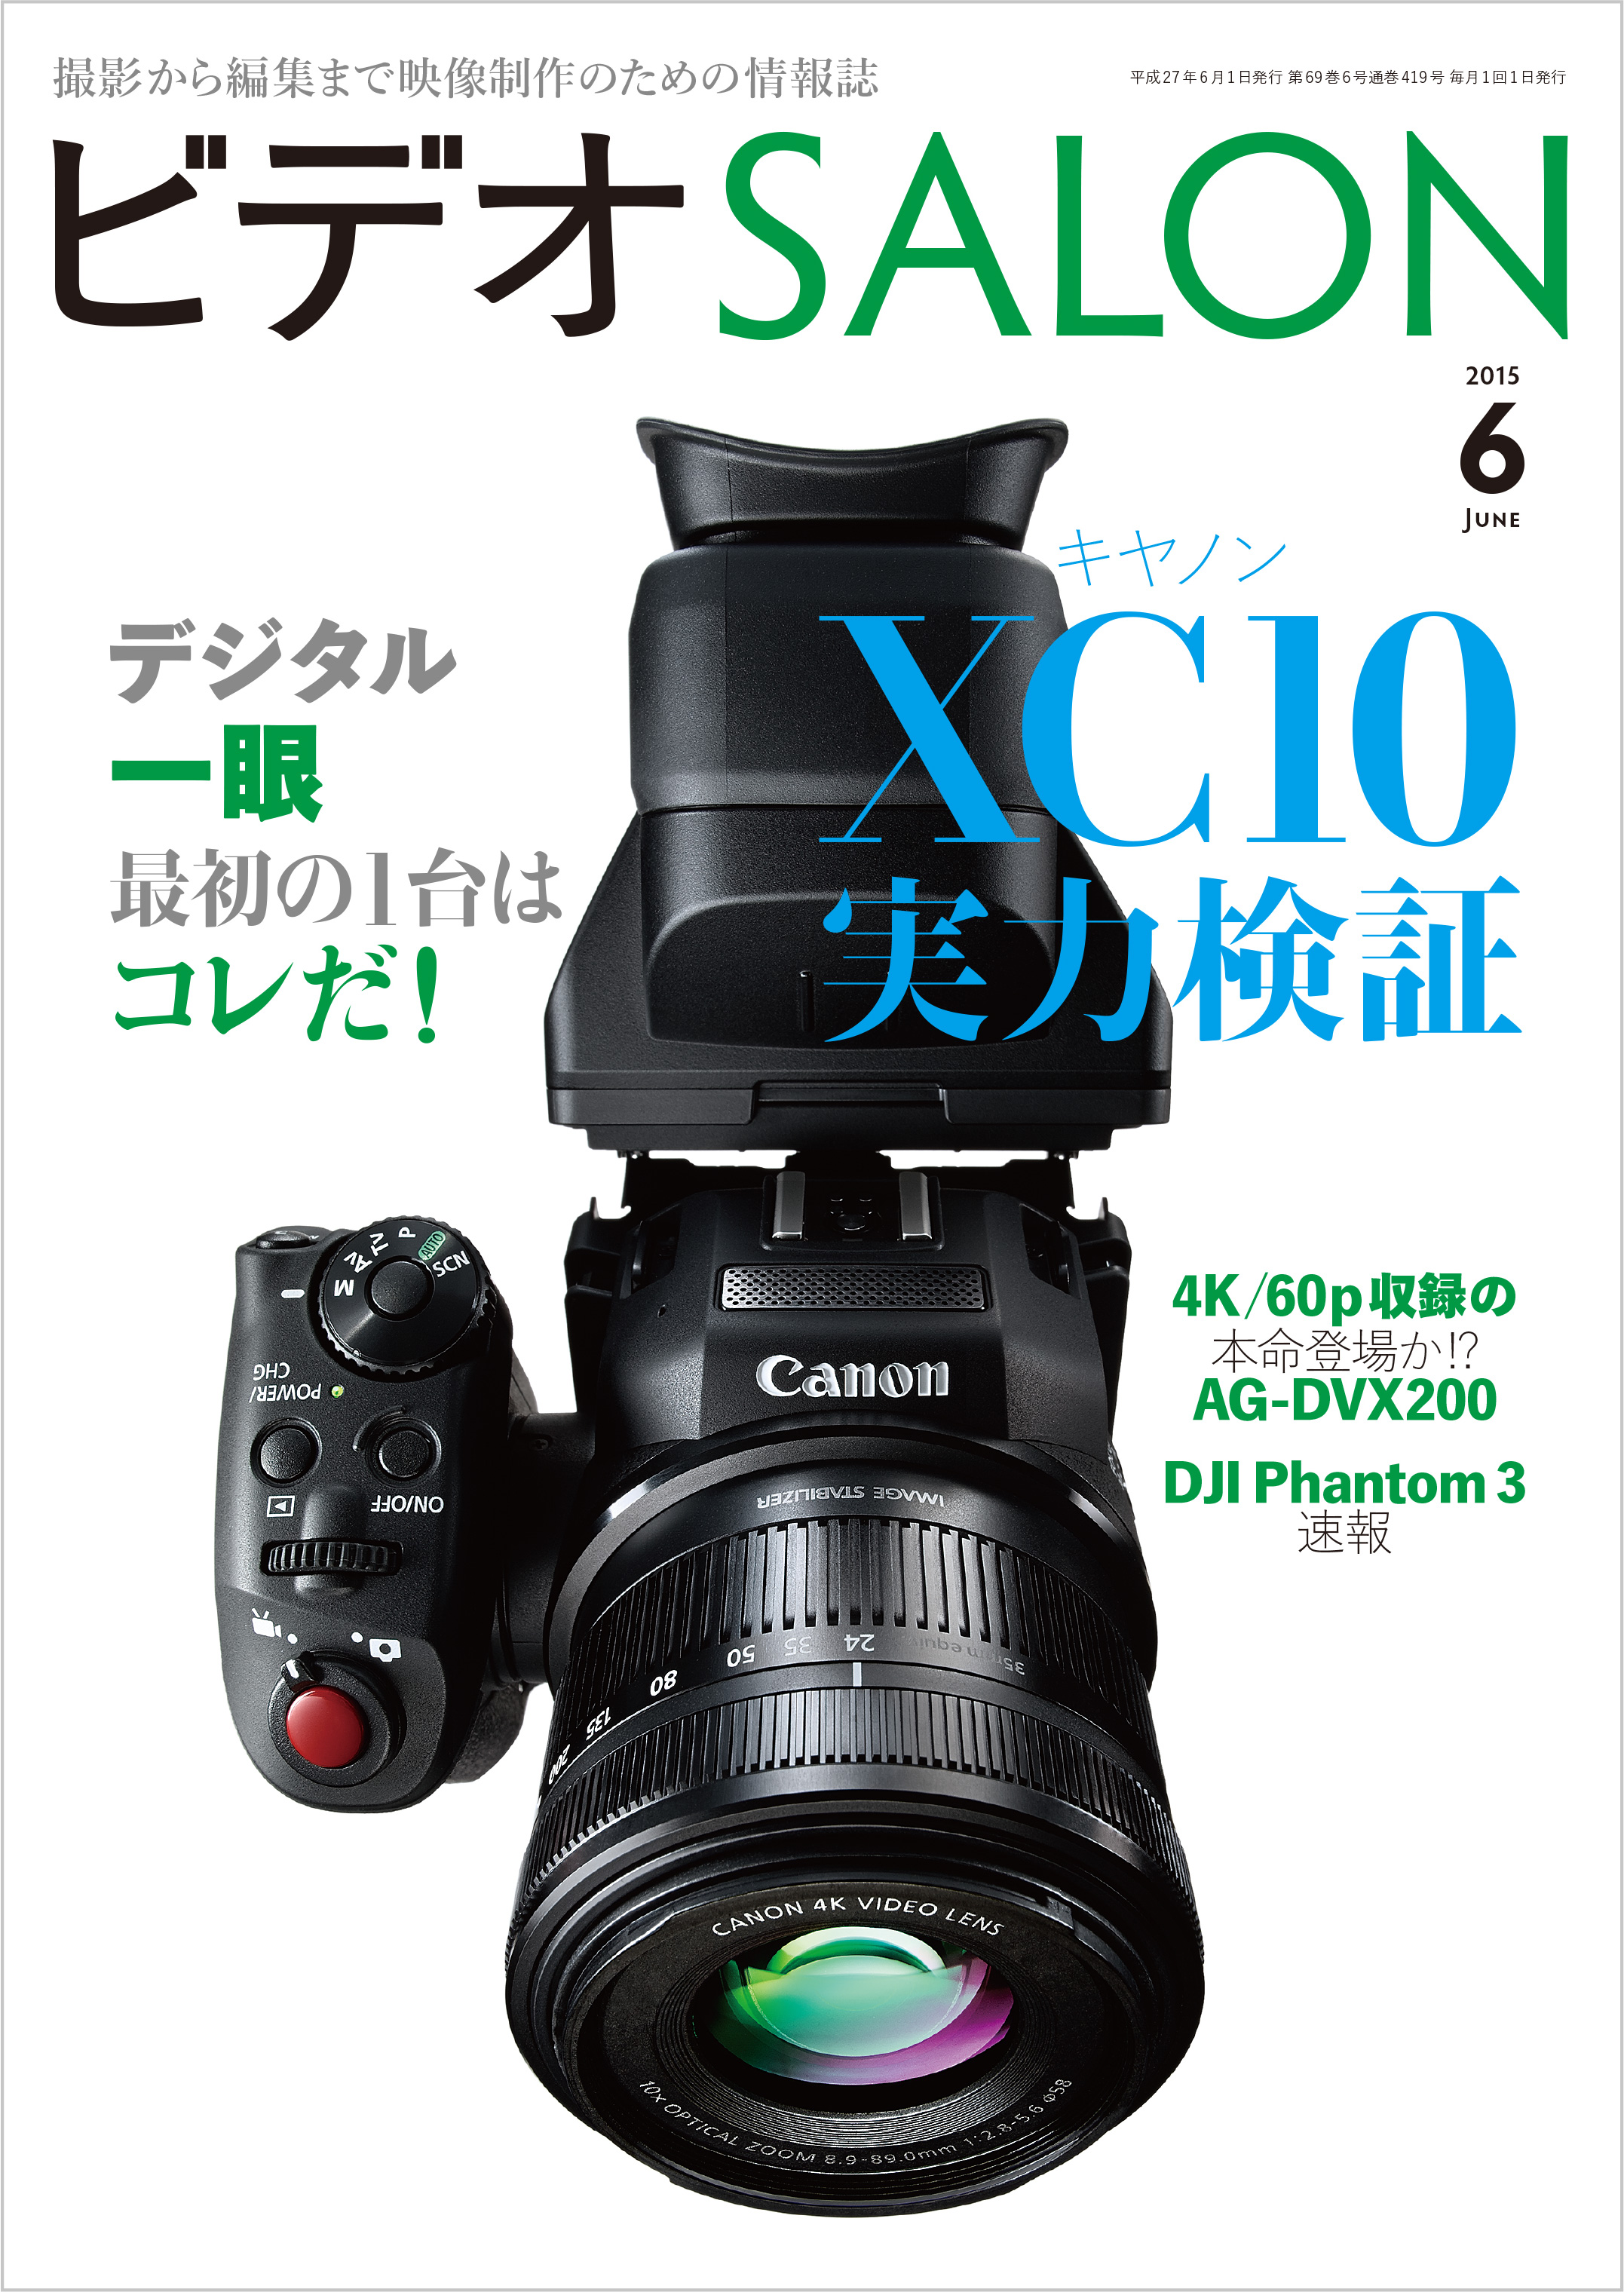 ソニー(SONY) FX6 Cinema Line カメラ レンズ付属モデル(付属レンズ